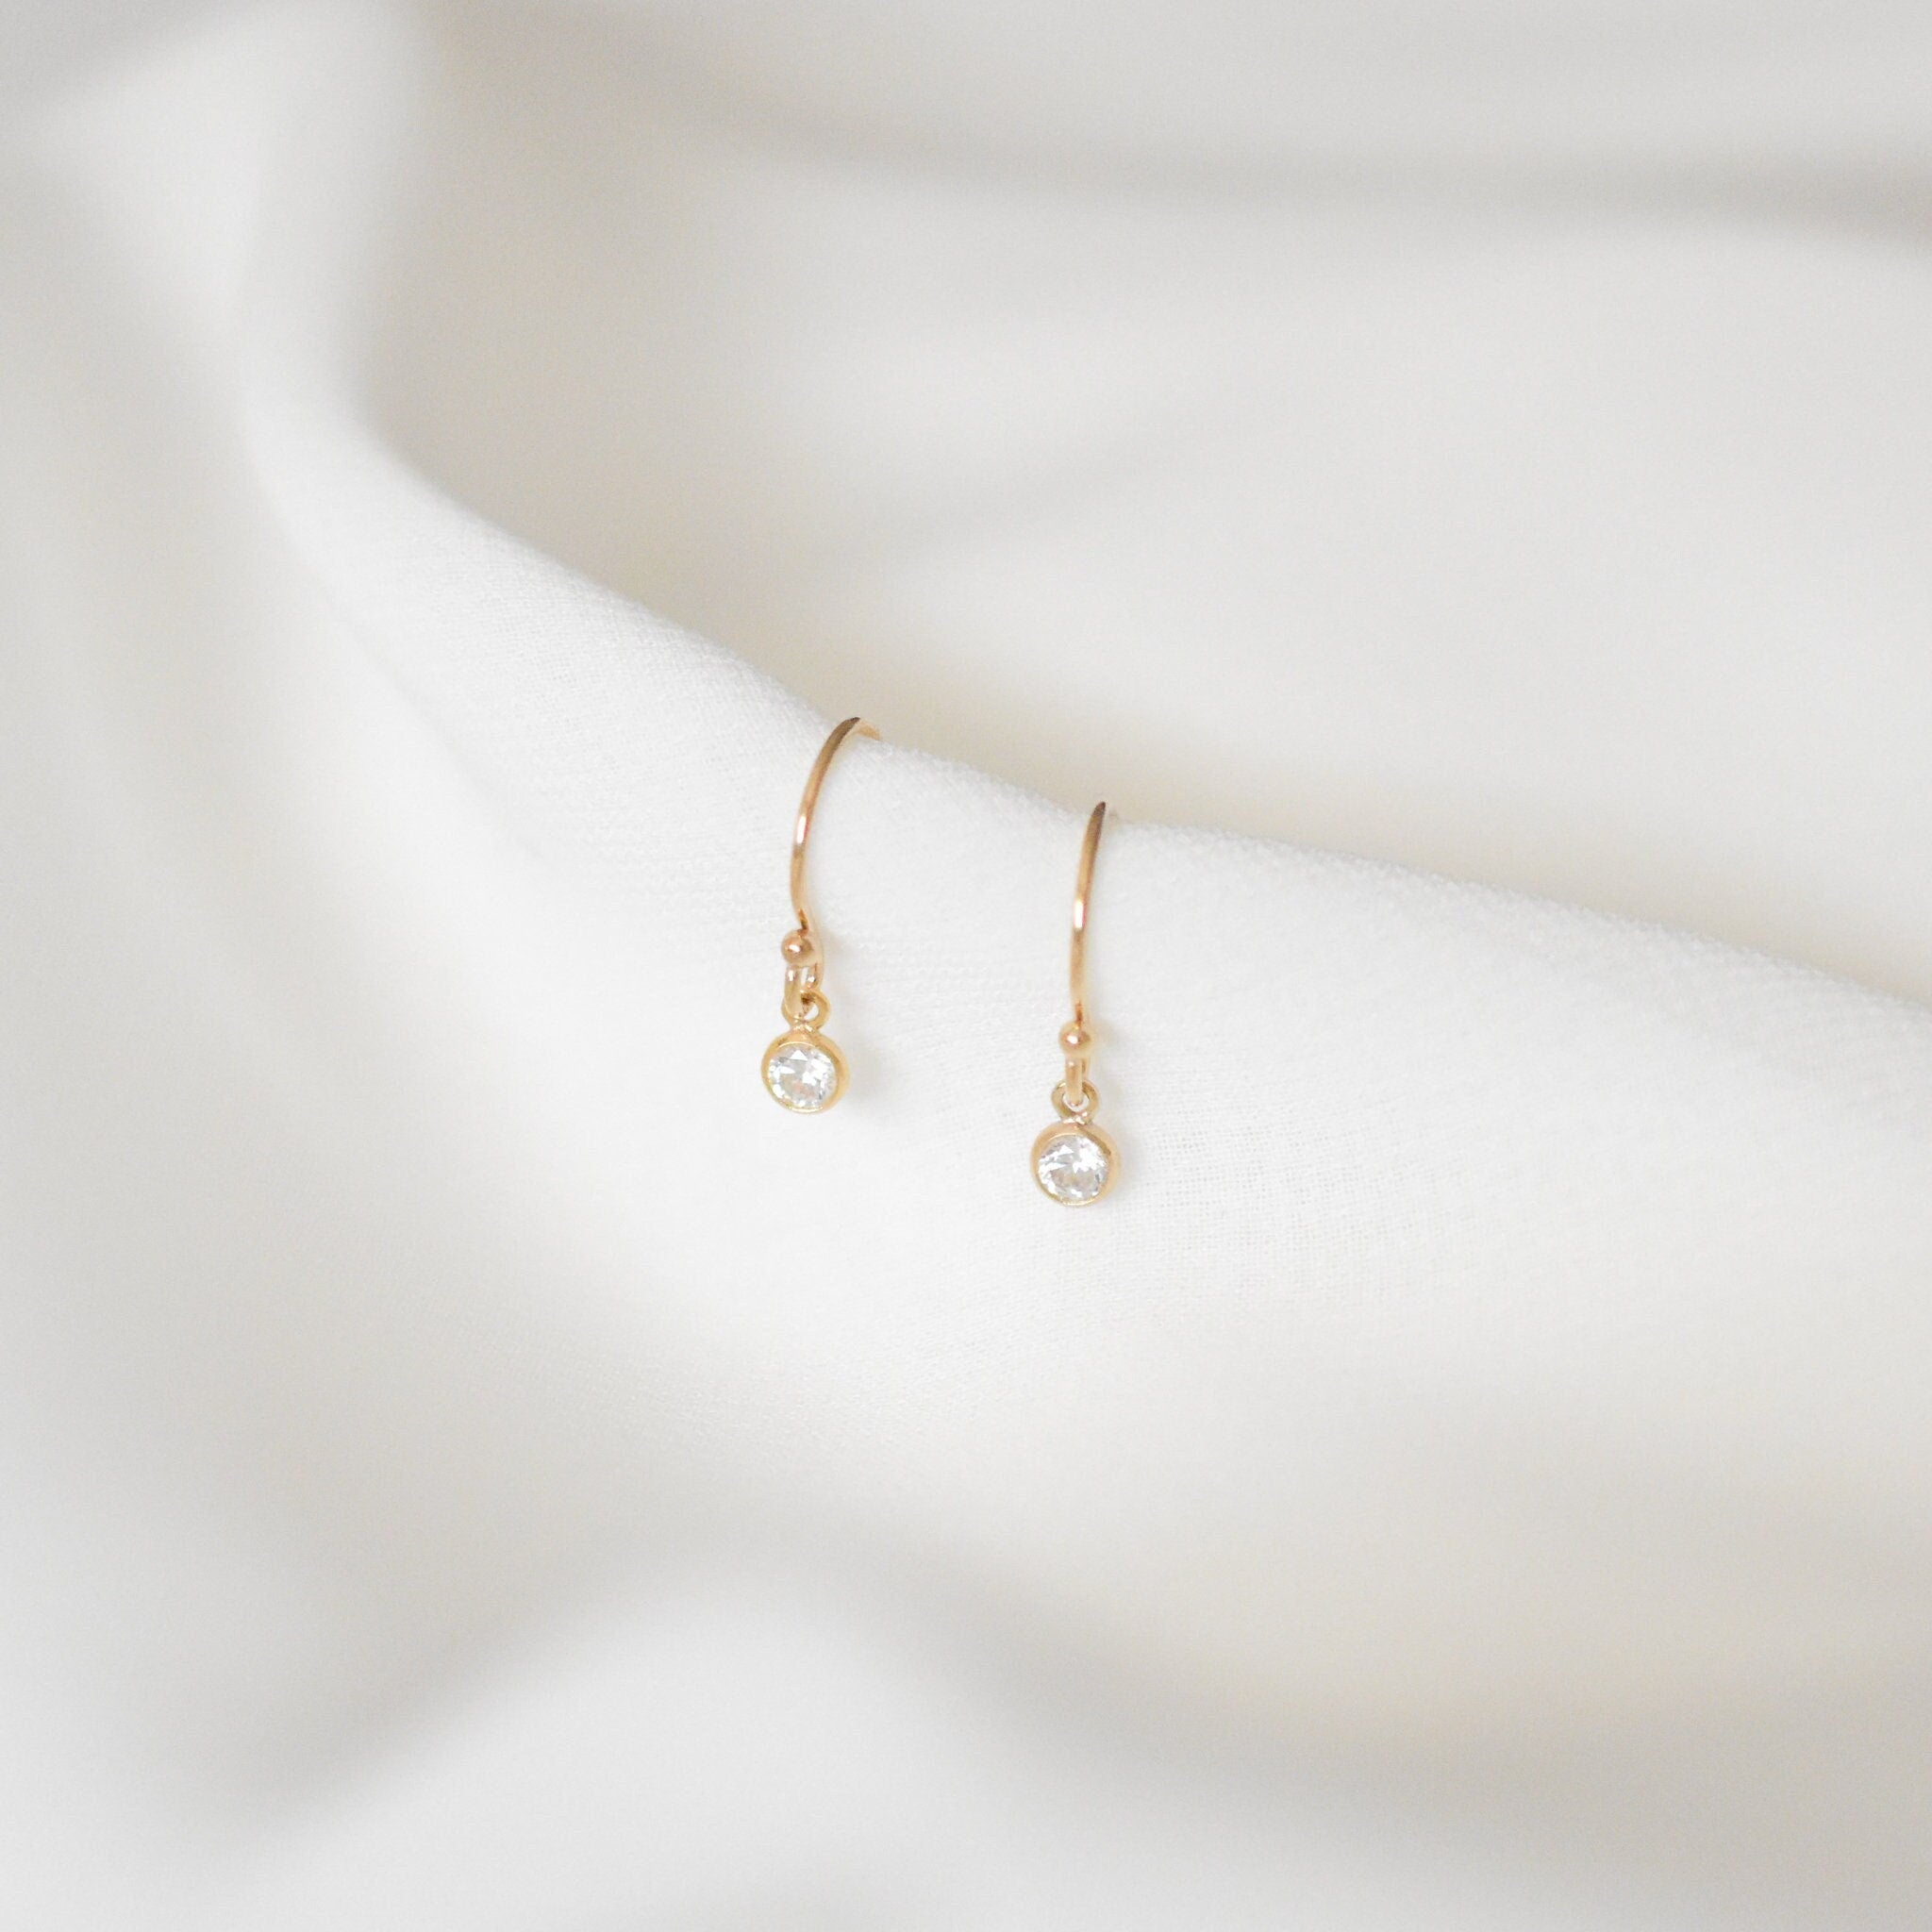 Small CZ Earrings - Dainty cz earrings, 14k gold filled earrings, simple everyday earrings, simple earrings, dainty earrings |GFE00053